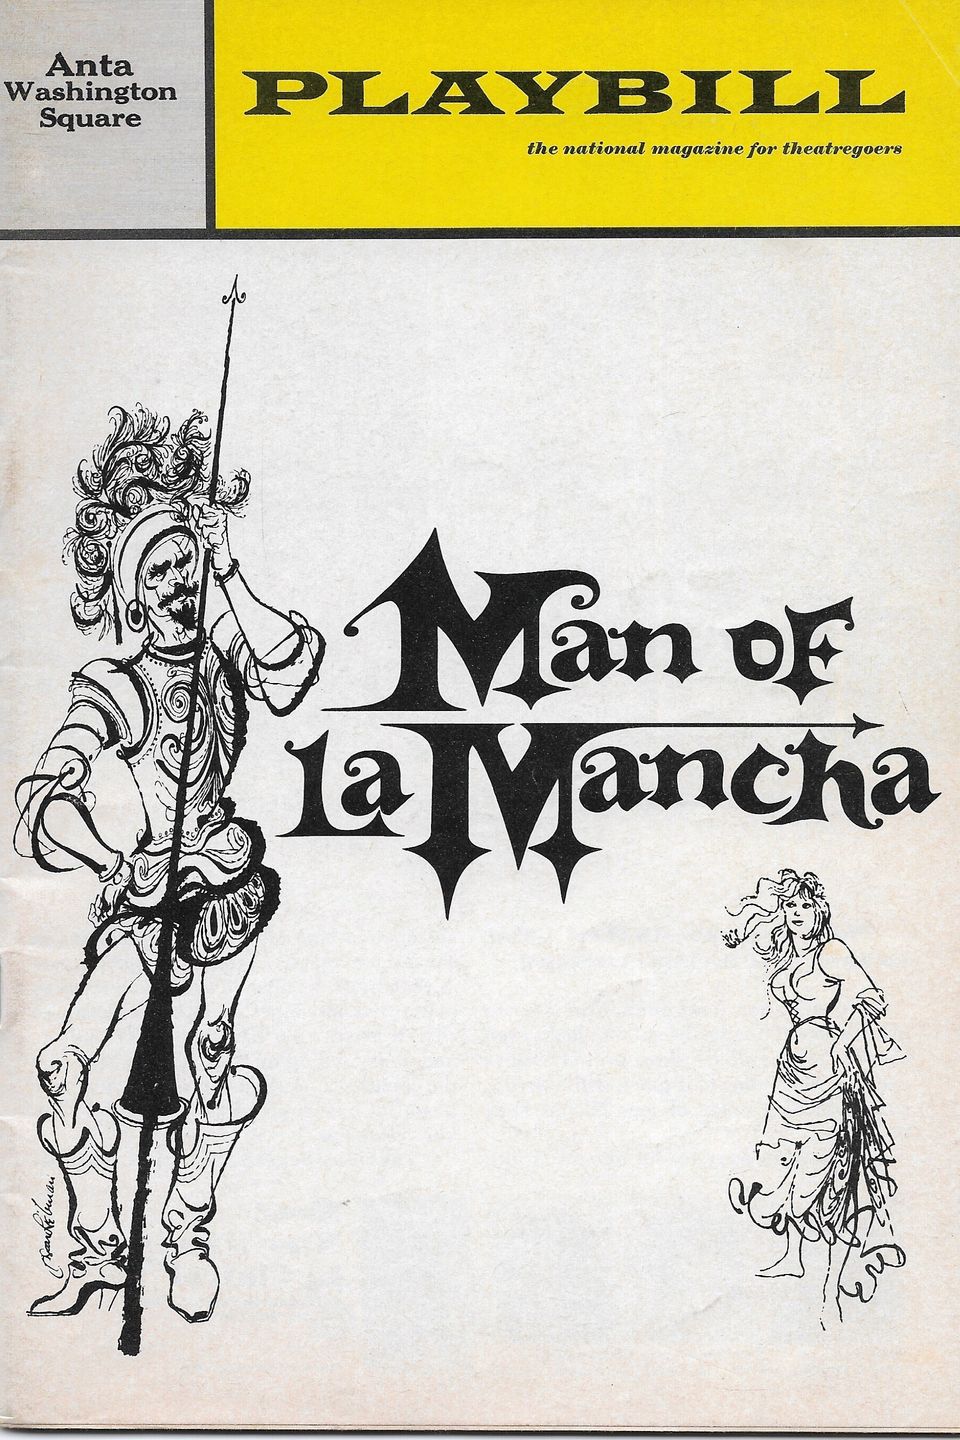 Man of lamancha